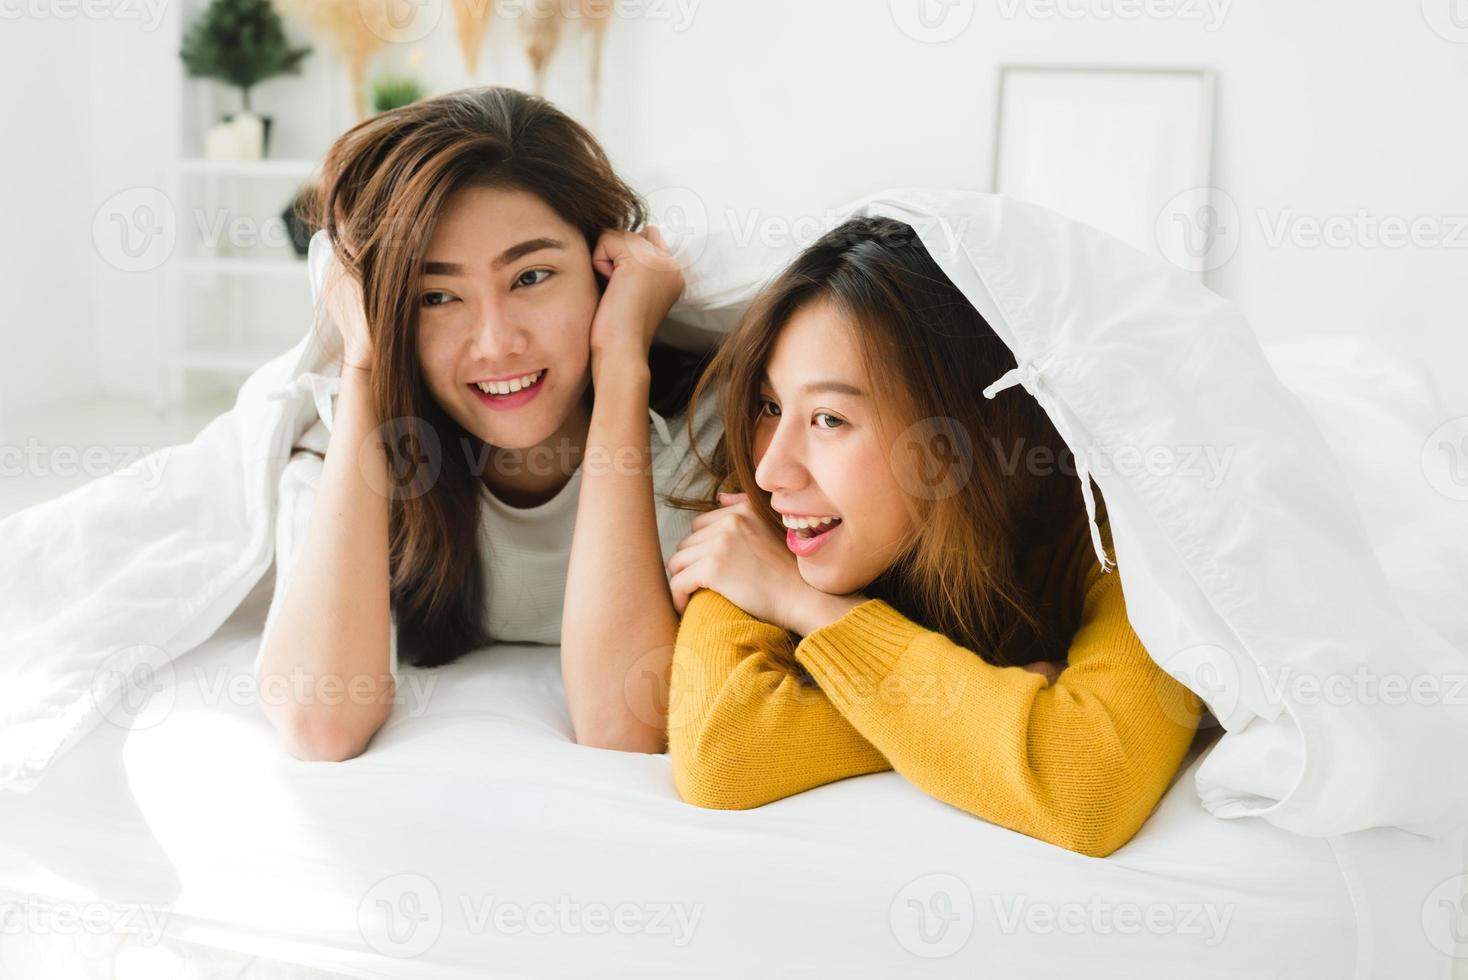 Draufsicht auf schöne junge asiatische Frauen lesbisches glückliches Paar, das Überraschung zeigt und in die Kamera schaut, während sie im Bett unter der Decke liegt. lustige Frauen nach dem Aufwachen. lesbisches paar zusammen drinnen konzept foto